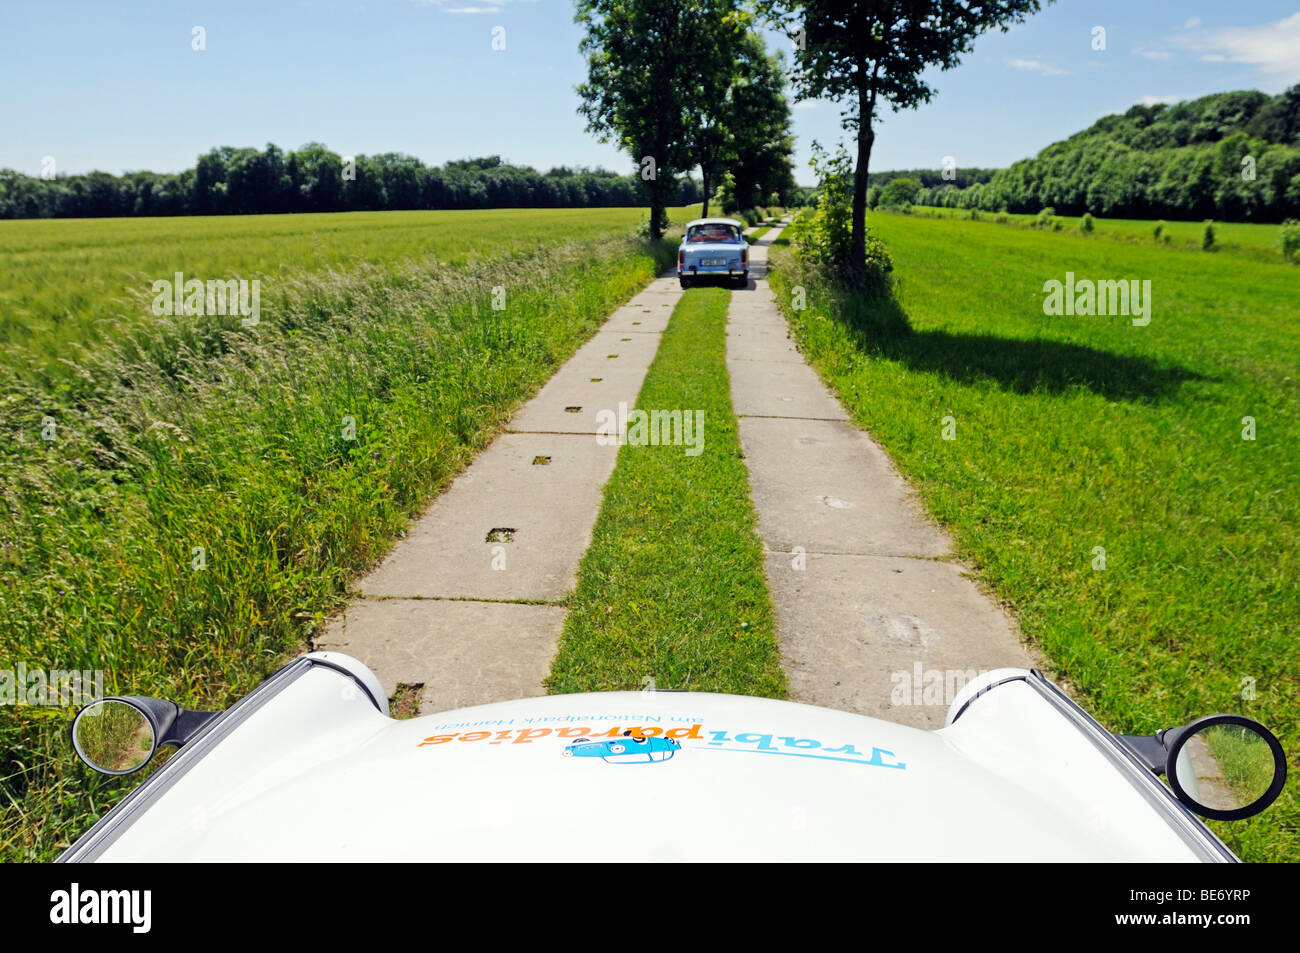 Trabi voitures sur le chemin en pierre de la RDA à l'ex-frontière intérieure allemande, Thuringe, Allemagne, Europe Banque D'Images